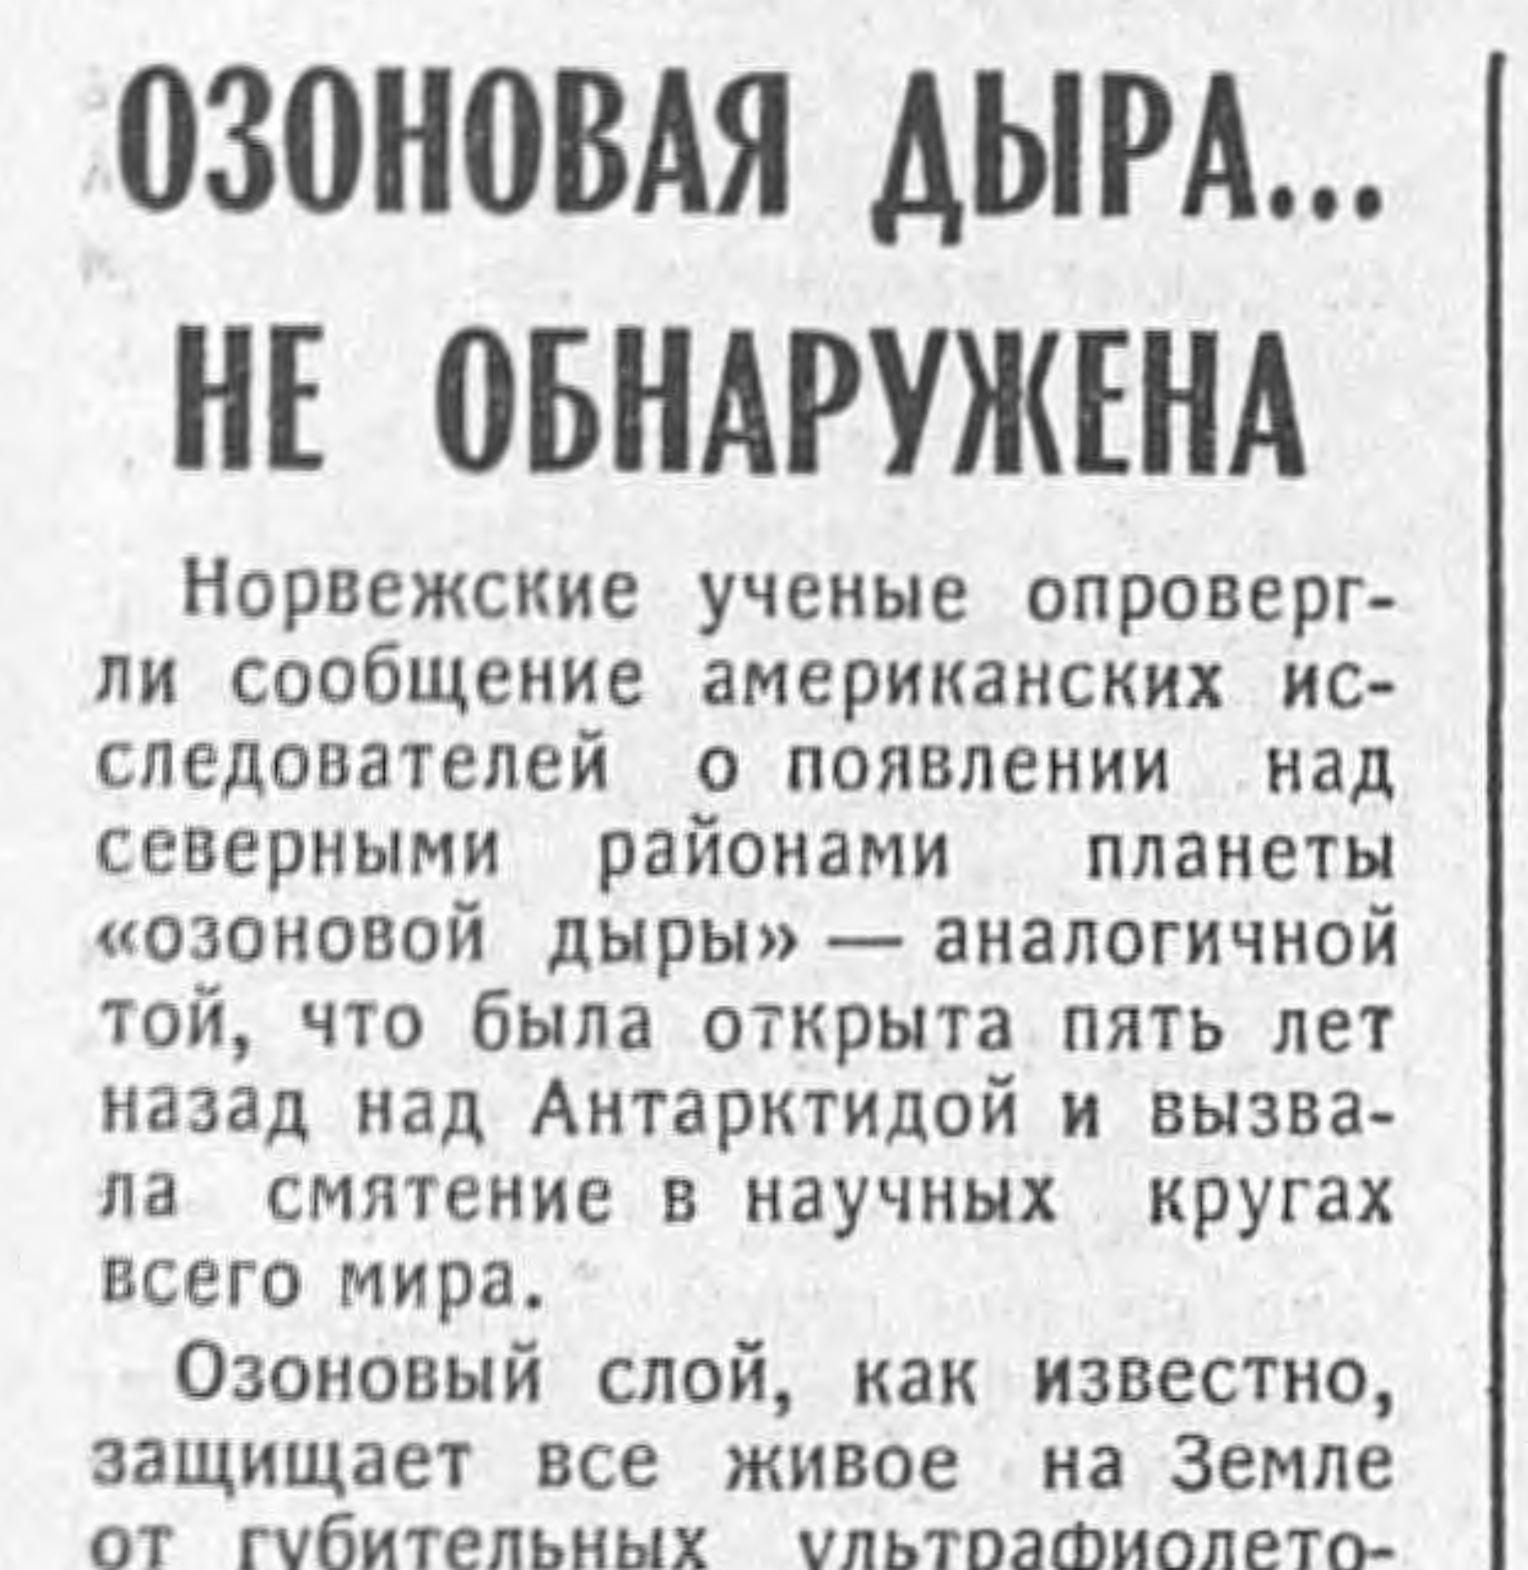 Заметка об озоновой дыре в газете “Известия”, № 174, июнь 1990 года